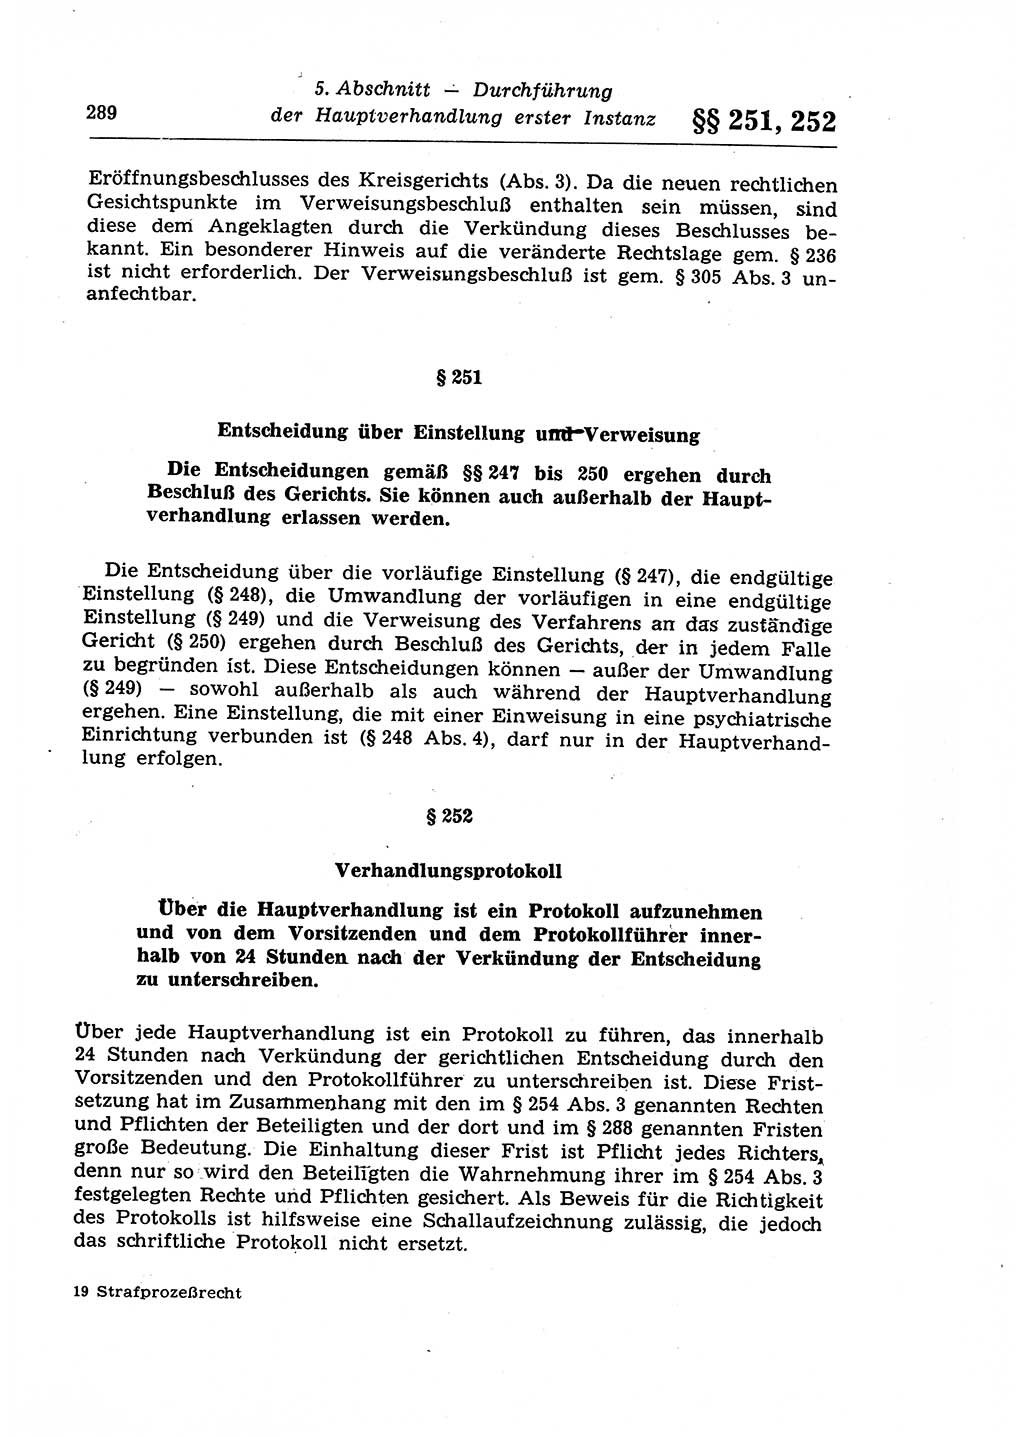 Strafprozeßrecht der DDR (Deutsche Demokratische Republik), Lehrkommentar zur Strafprozeßordnung (StPO) 1968, Seite 289 (Strafprozeßr. DDR Lehrkomm. StPO 19688, S. 289)